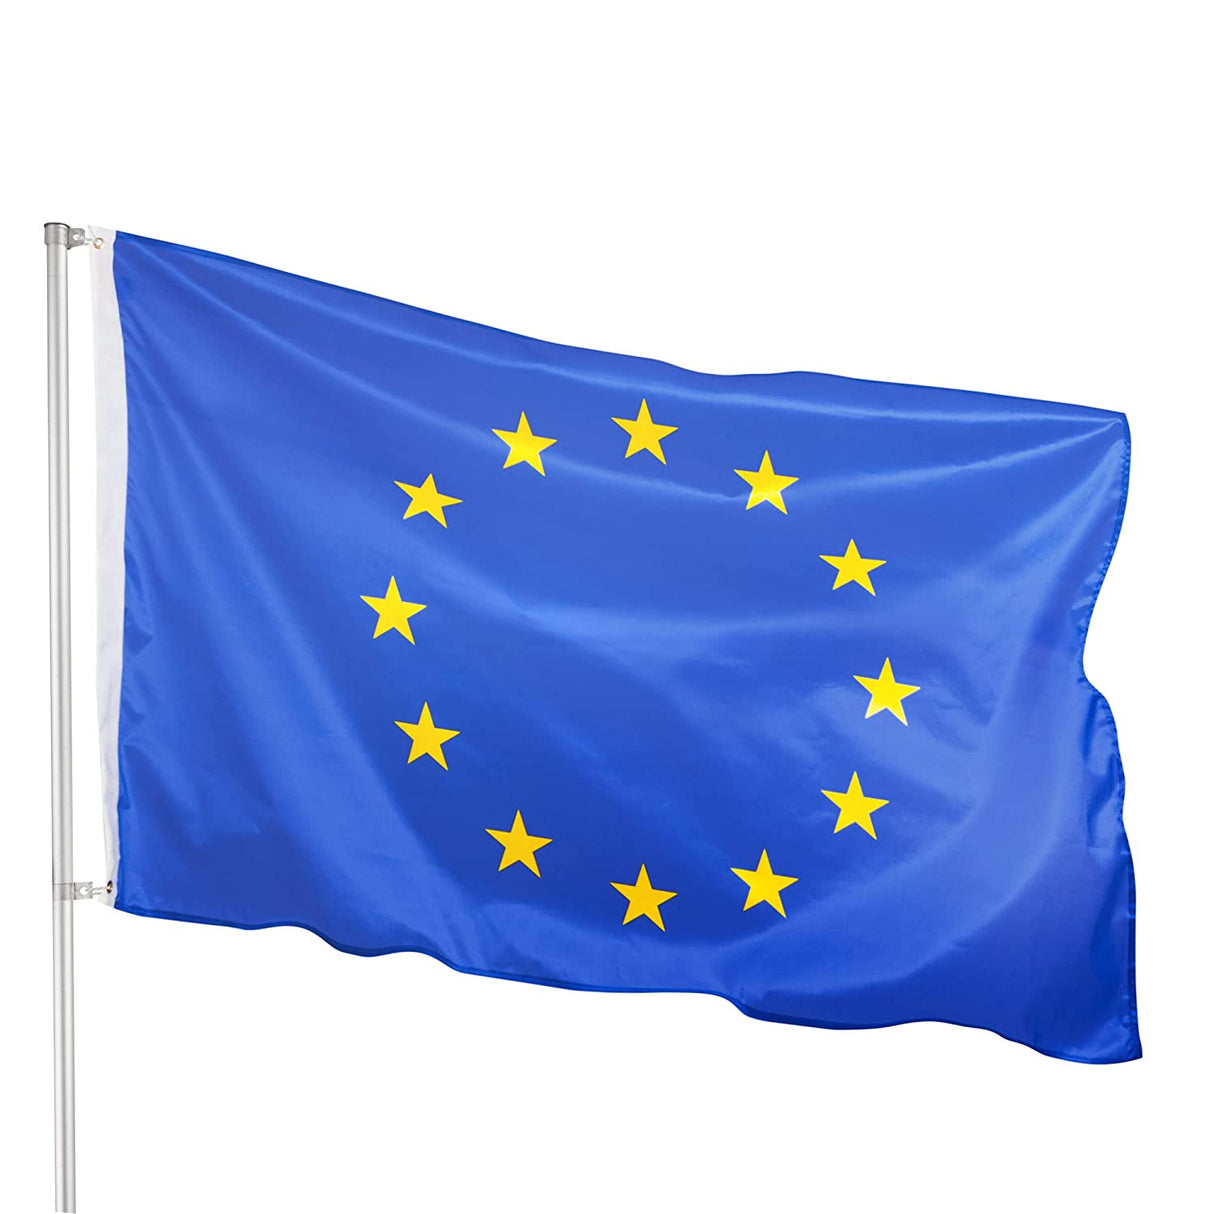 Bandeira da União Europeia 150cm x 90cm EU Flag Europe - Multi4you®